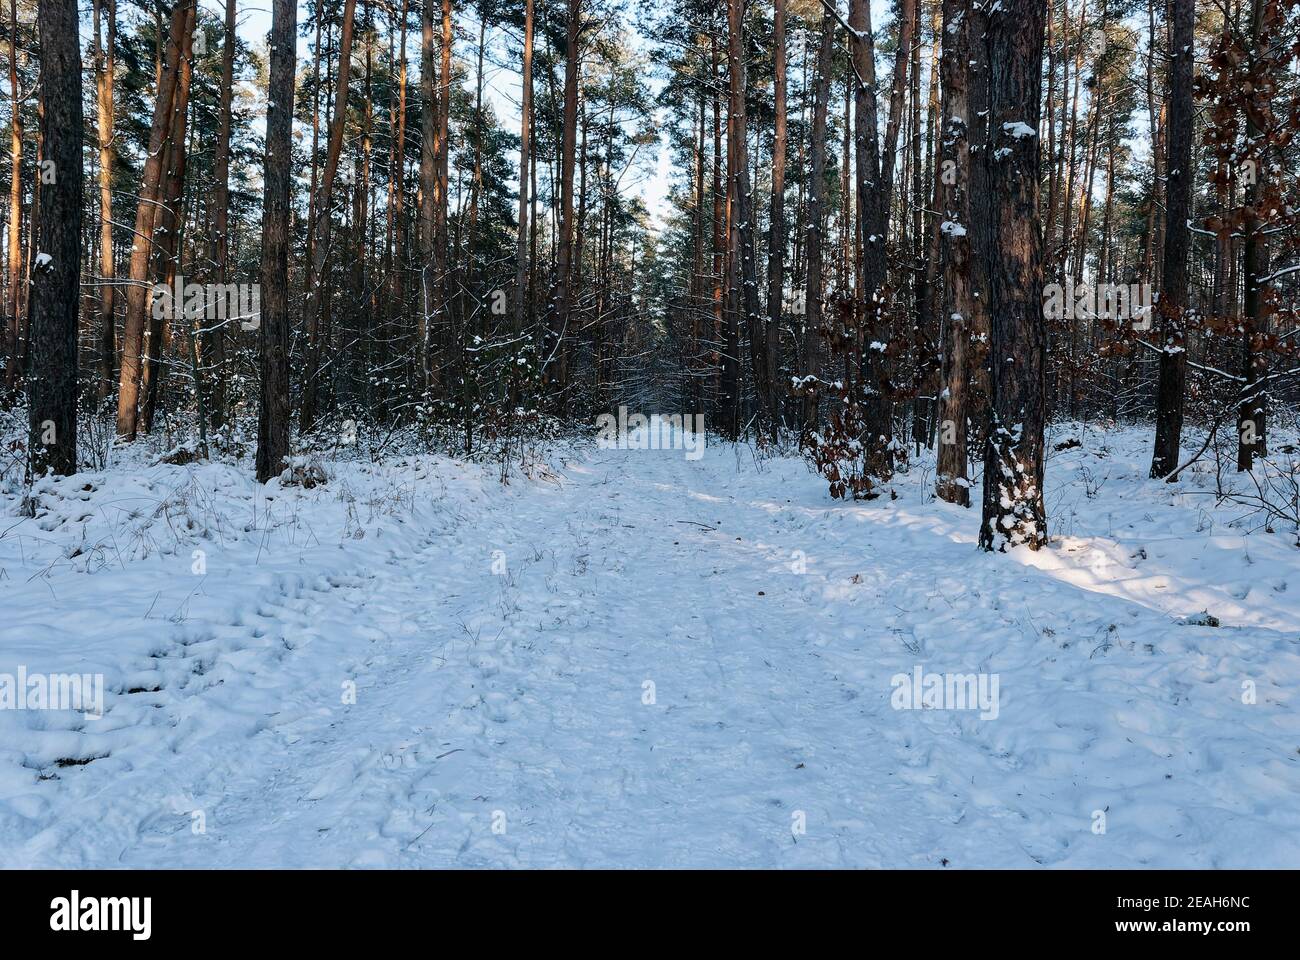 Contrasto invernale nella foresta. La foto è stata scattata nella foresta durante l'ora d'oro - il sole era già molto basso all'orizzonte. Foto Stock